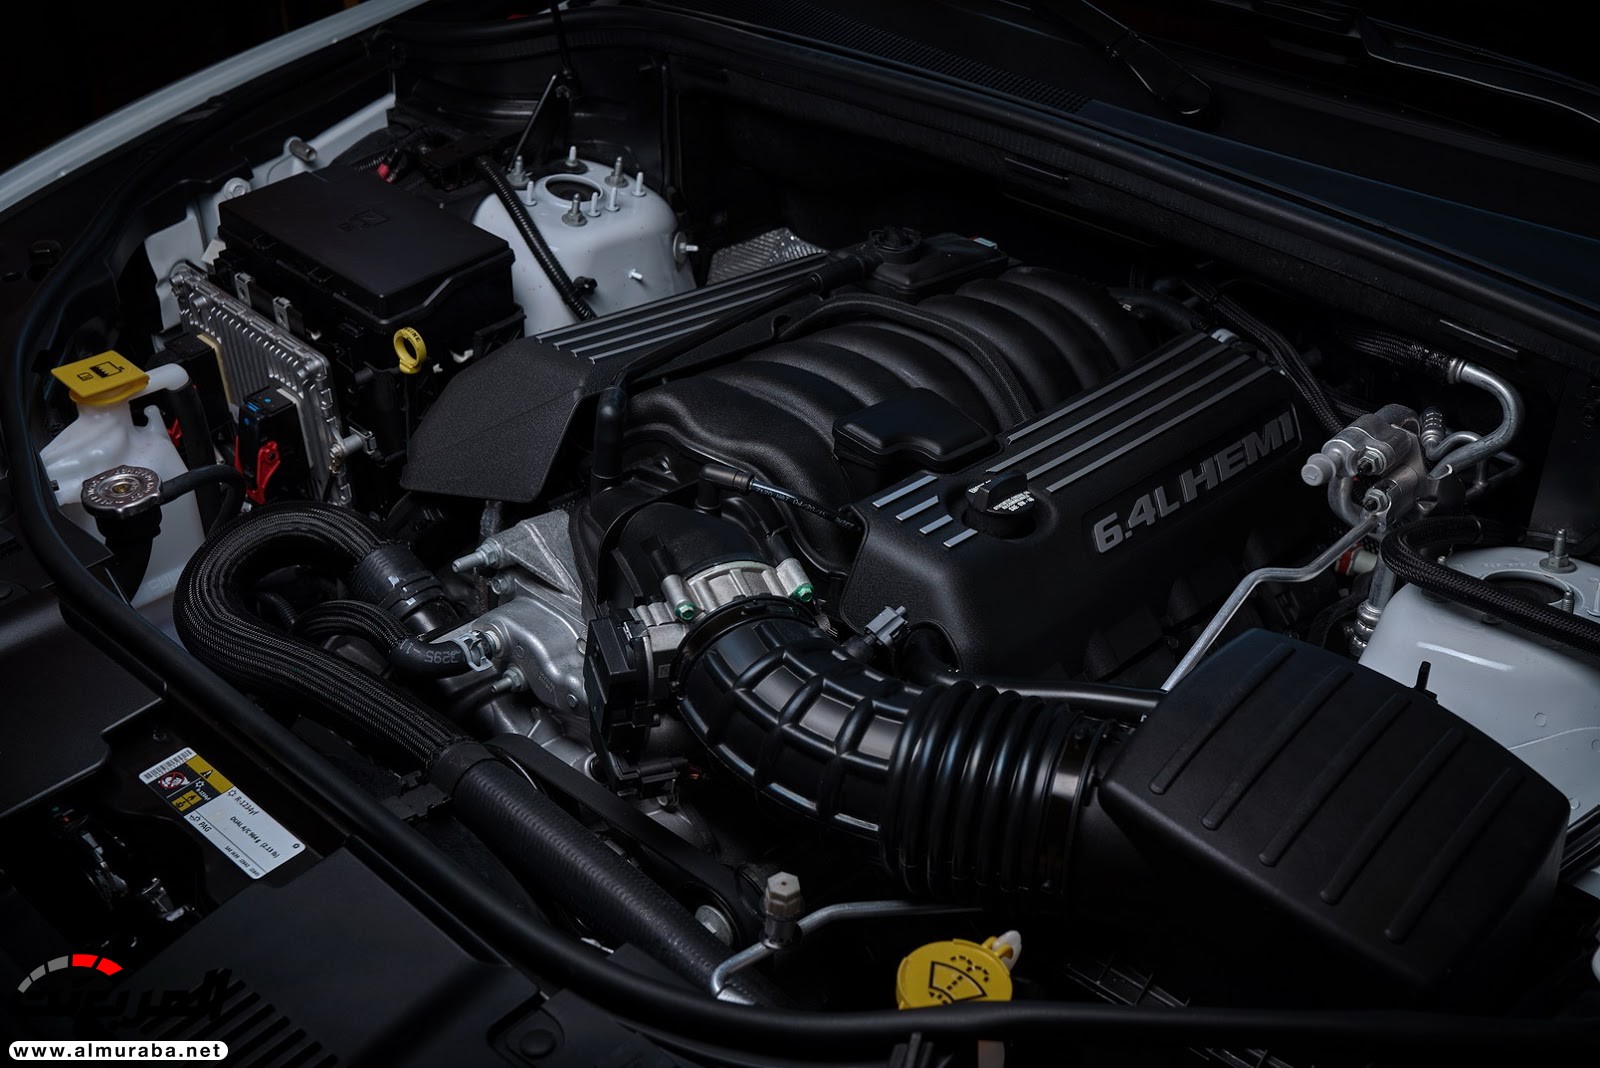 "دودج" دورانجو إس آر تي الجديدة كليا 2018 يكشف عنها بمحرك 475 حصان Dodge Durango SRT 182